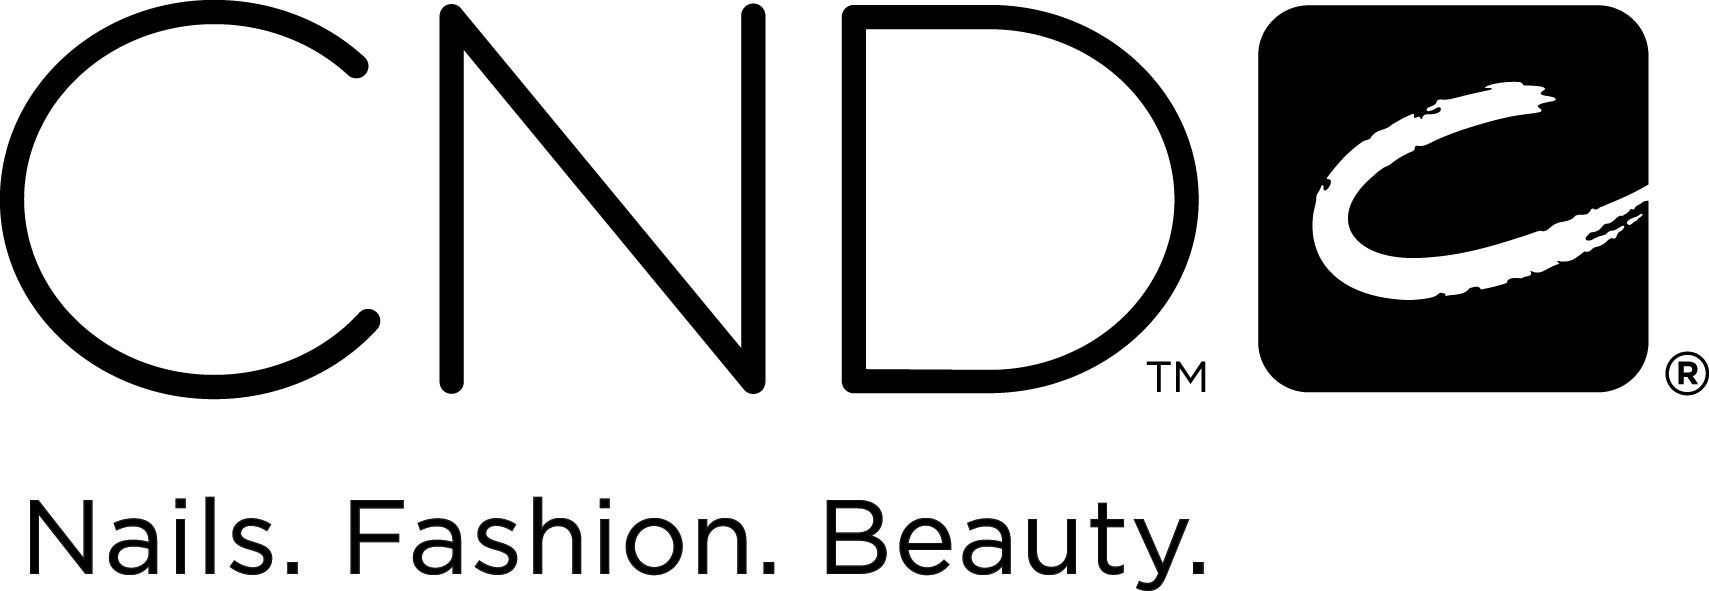 CNDC Logo Image